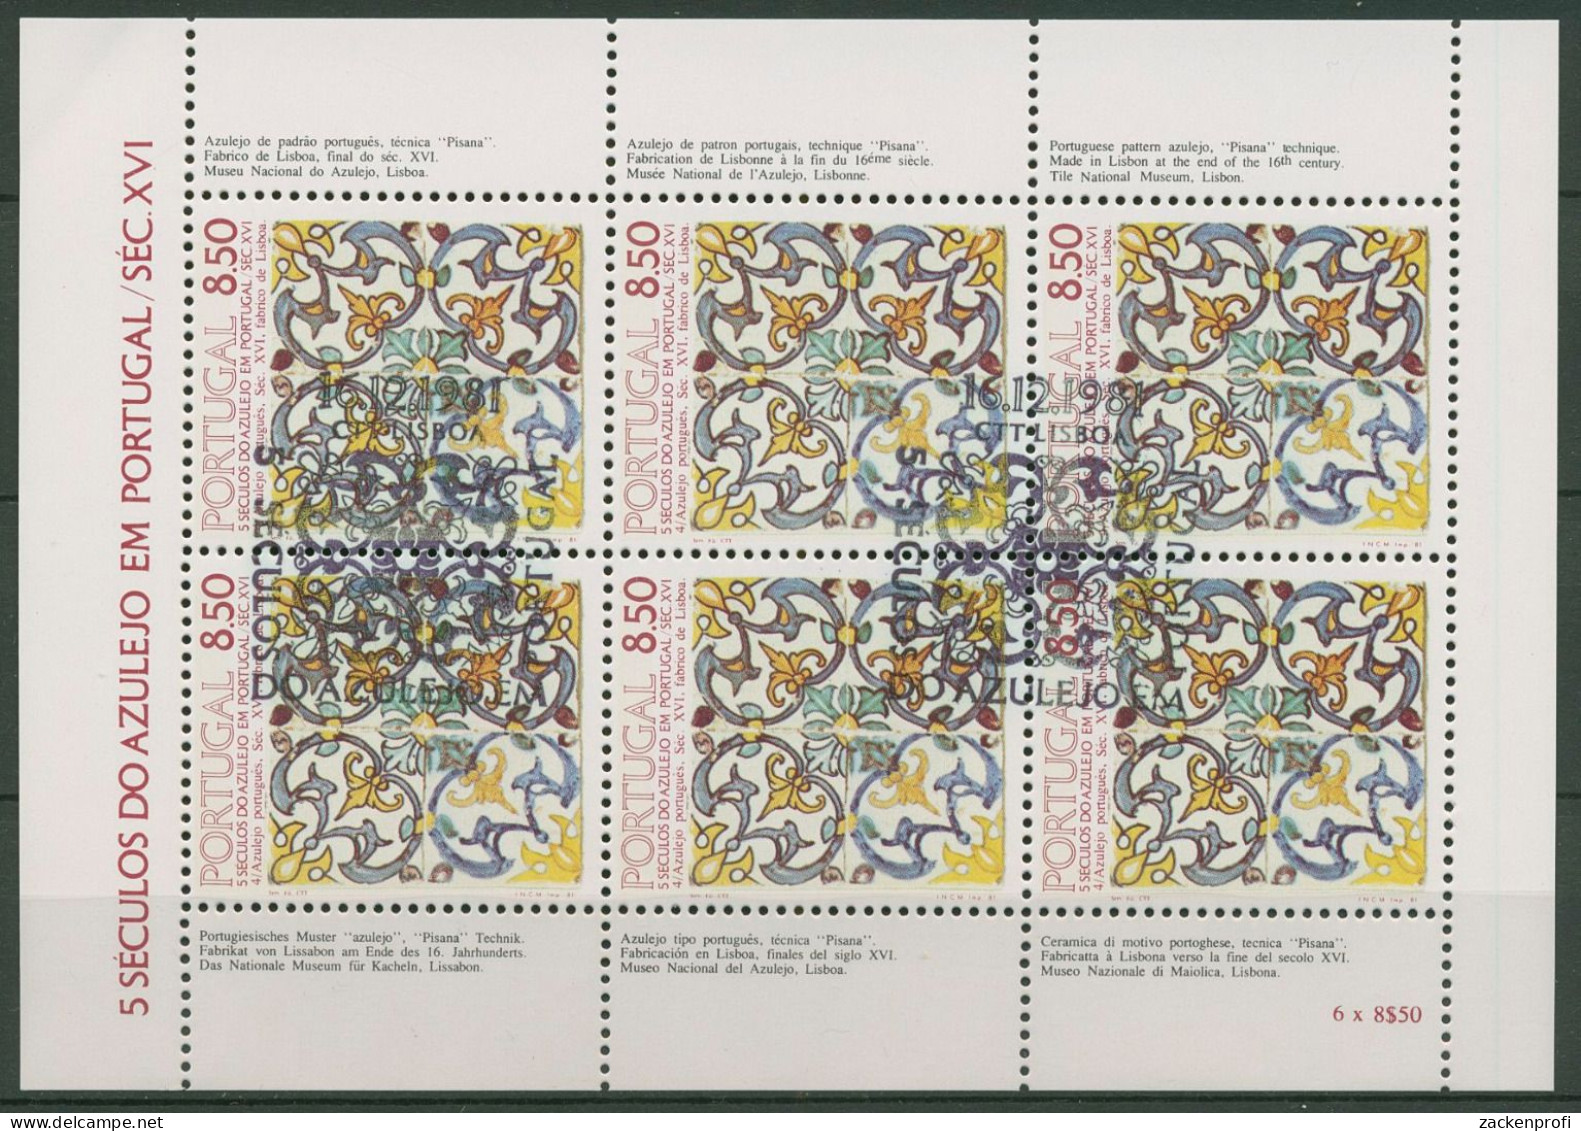 Portugal 1981 500 Jahre Azulejos Kleinbogen 1548 K Gestempelt (C91263) - Blocs-feuillets